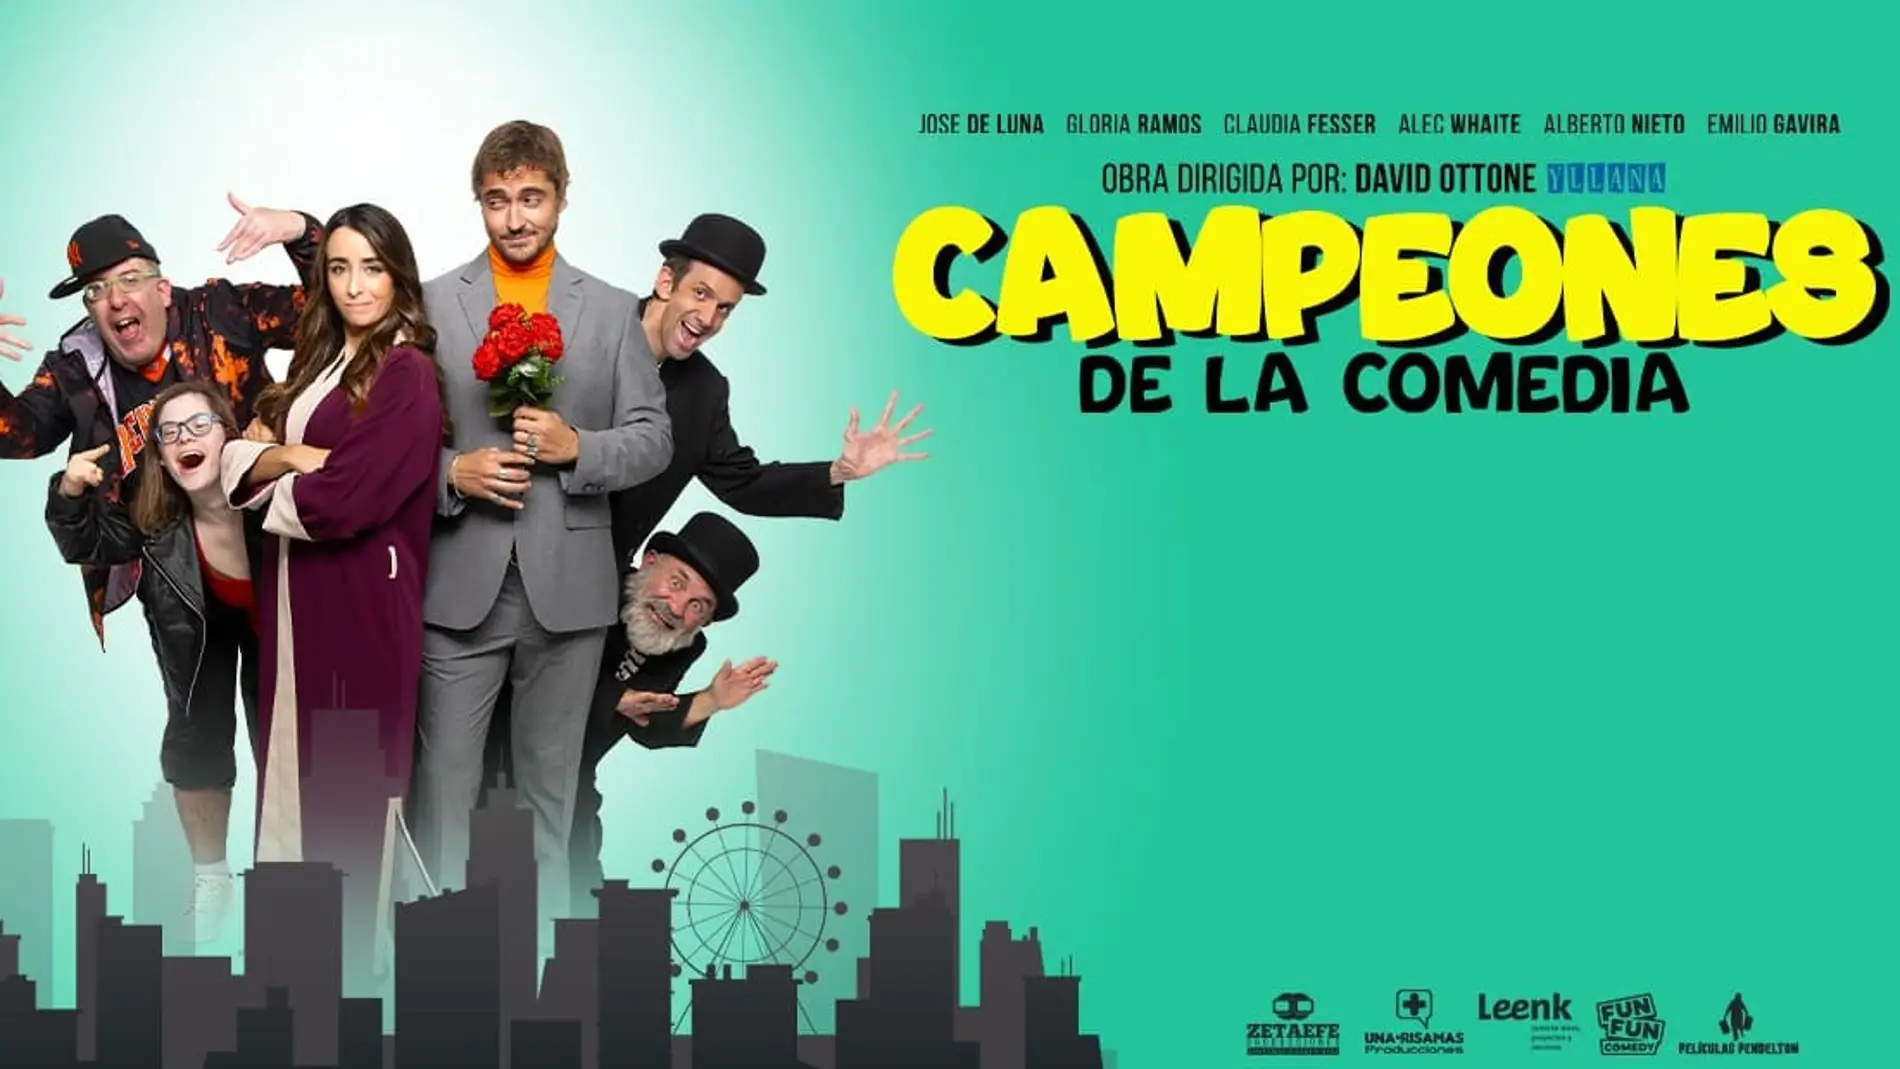 Llega a Orihuela la obra de teatro "Campeones de la comedia" el domingo 27 de mayo 